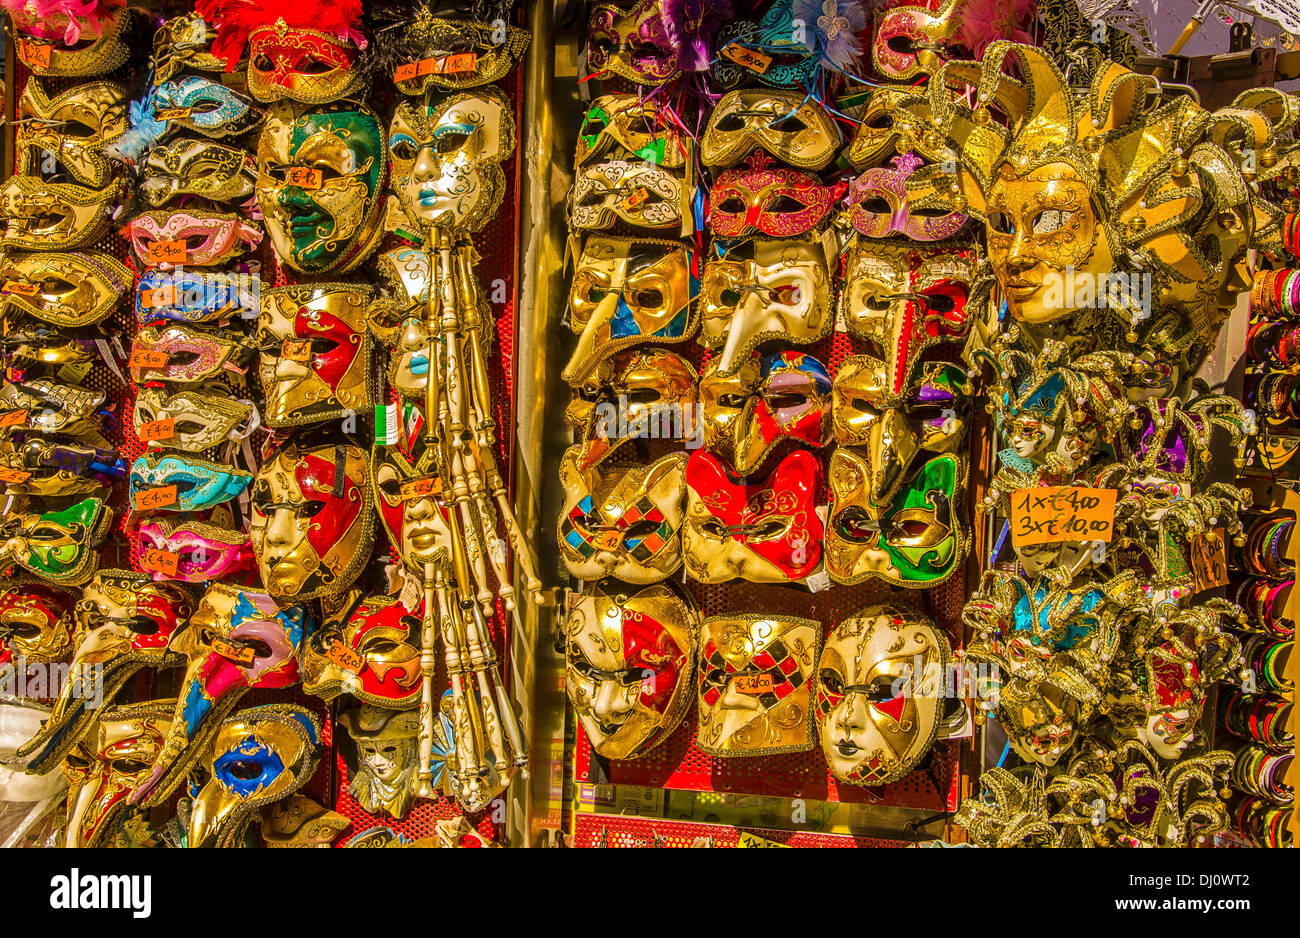 Máscaras de Carnaval son muy populares recuerdos para turistas y se muestran en muchas pequeñas tiendas y puestos callejeros. Foto de stock